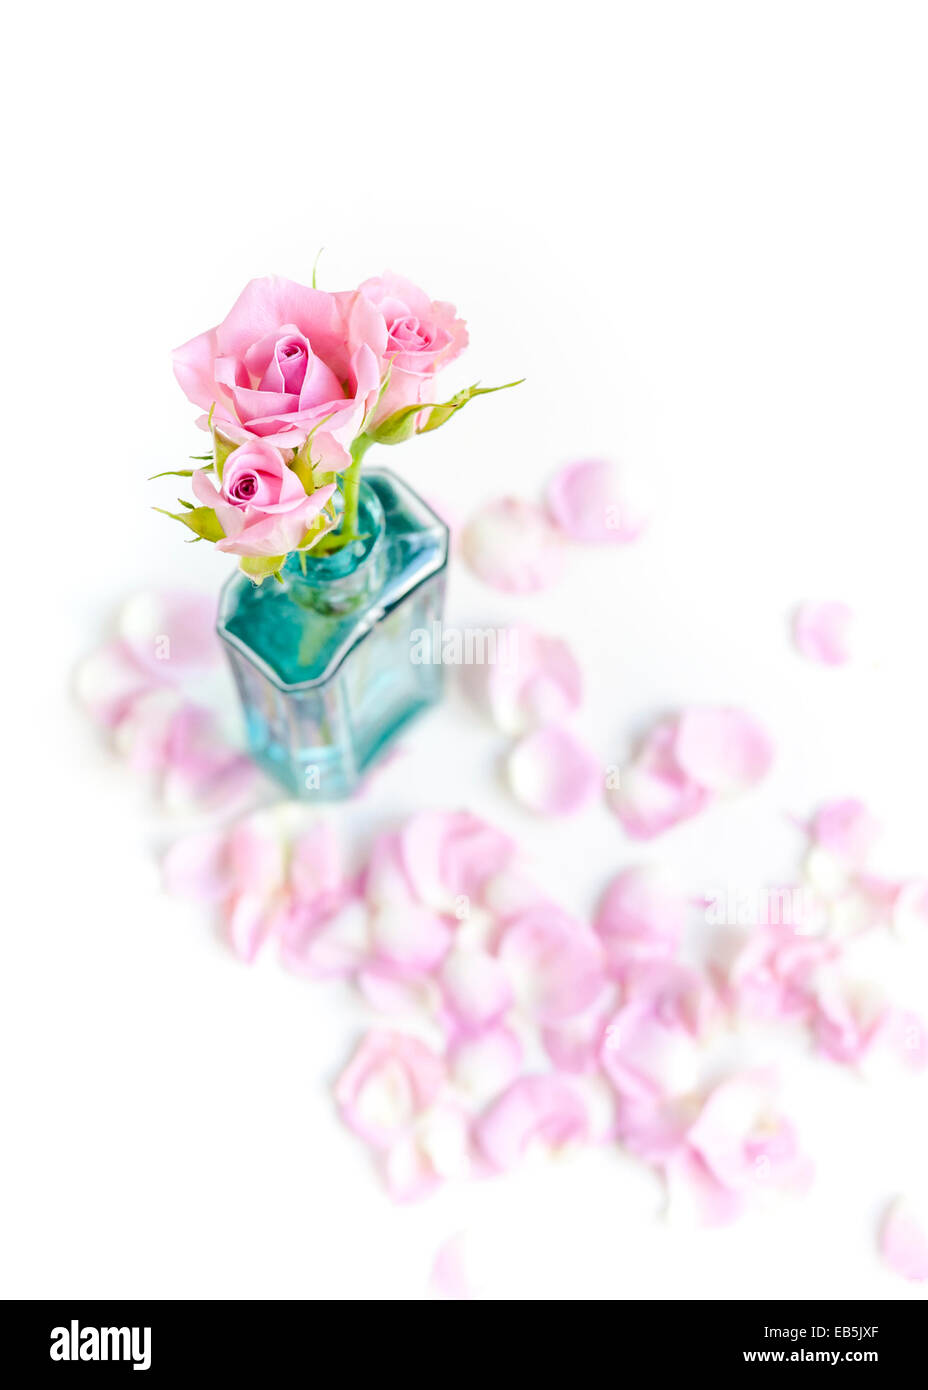 Todavía la vida creativa vintage botella de vidrio azul y rosa con pétalos de rosas y el telón de fondo blanco Foto de stock